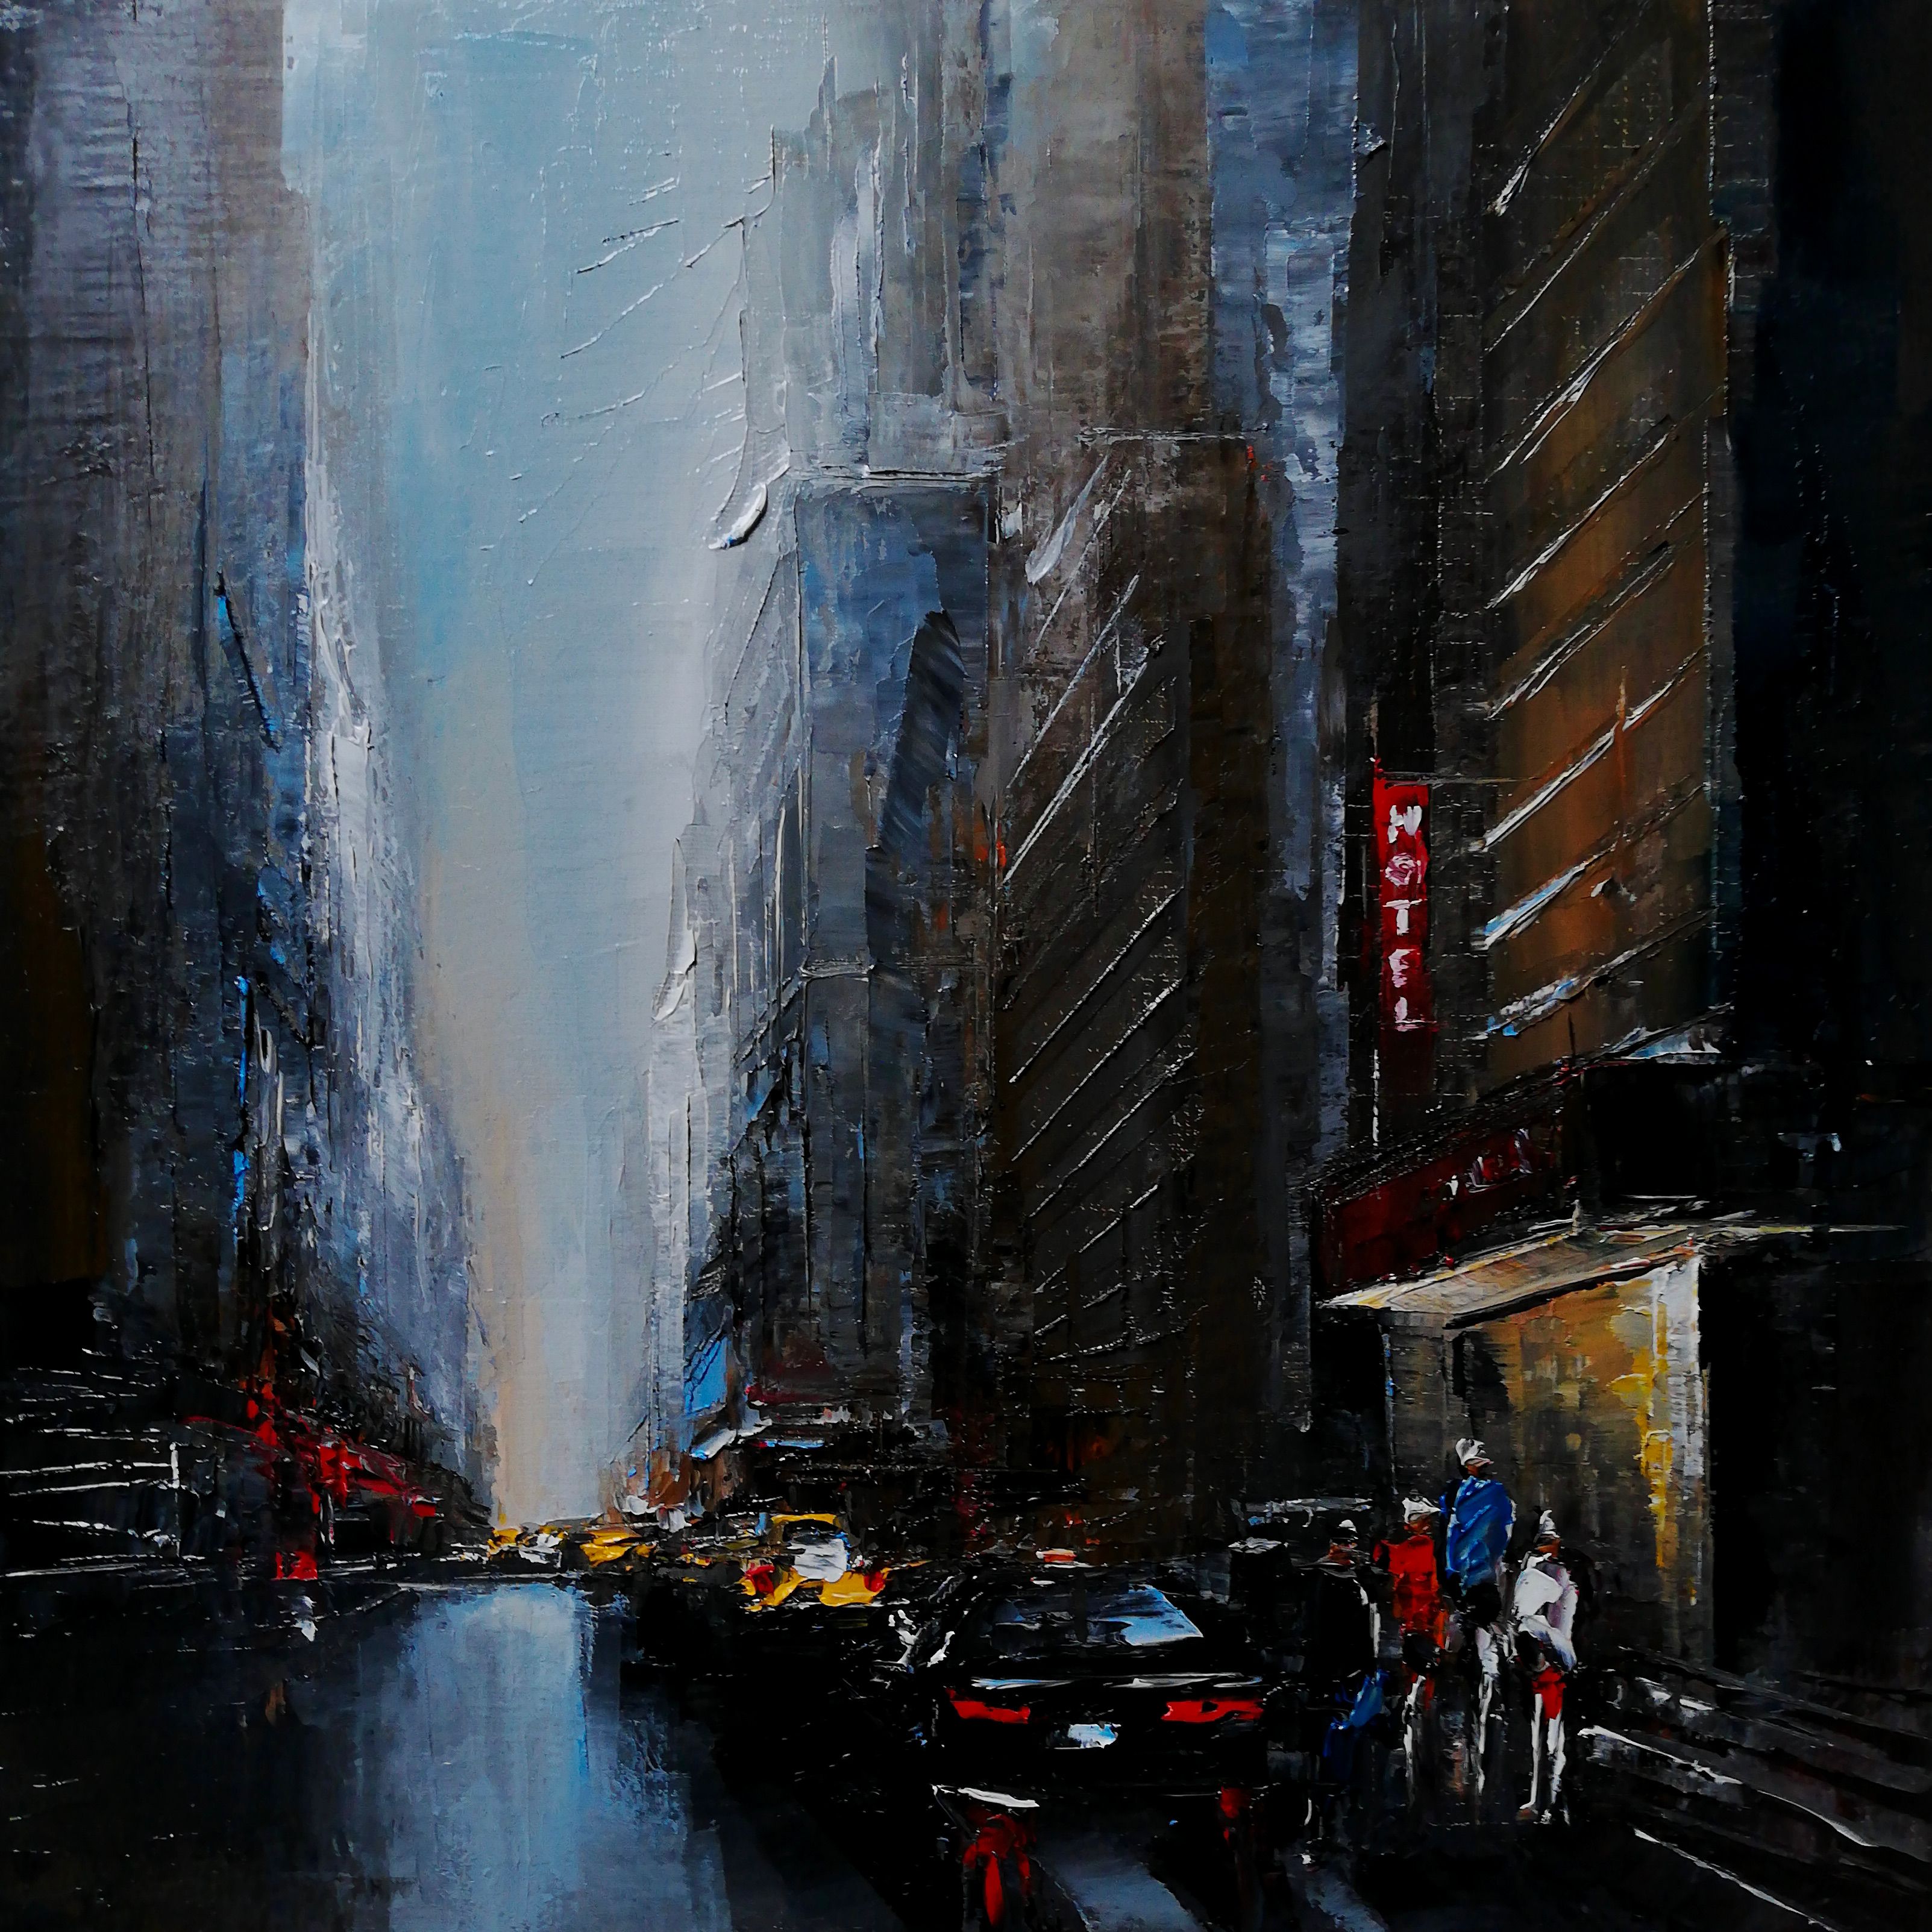 Cuadro de Philippe Meslin "Manhattan traffic Huile sur lin", es un óleo figurativo coloreado de una escena callejera de Manhattan.